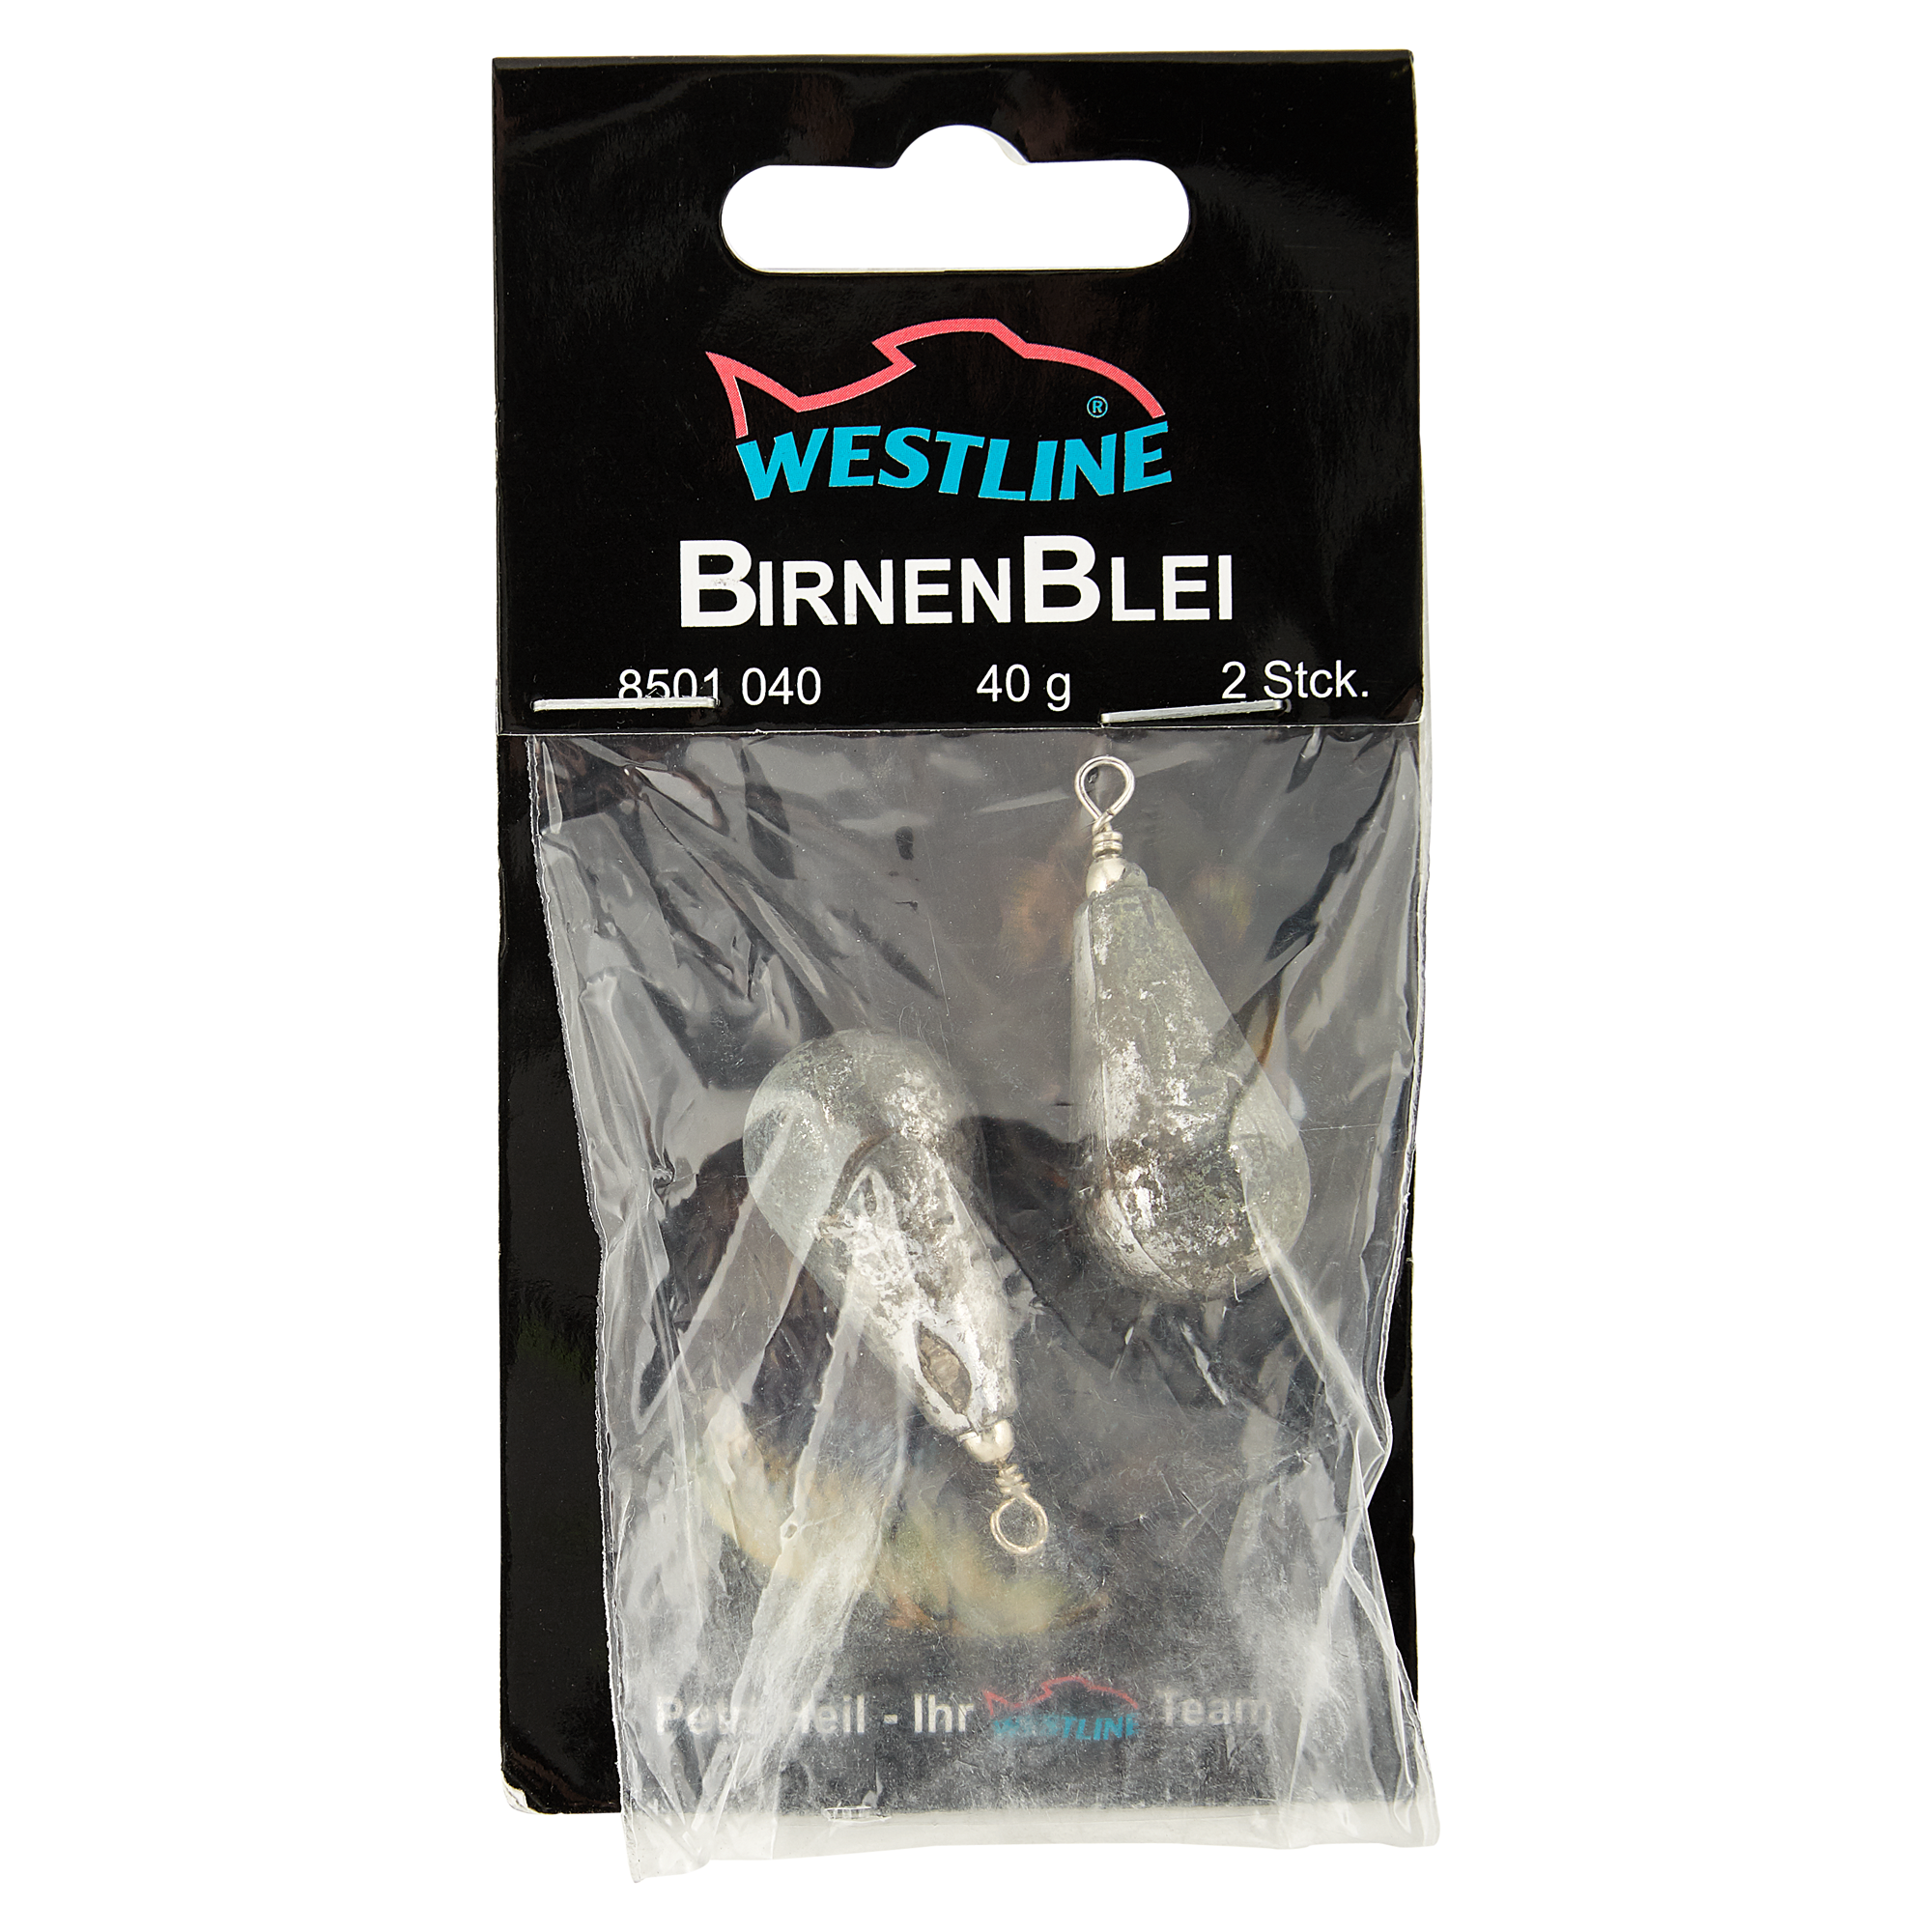 Birnenbleie mit Wirbel 40 g + product picture